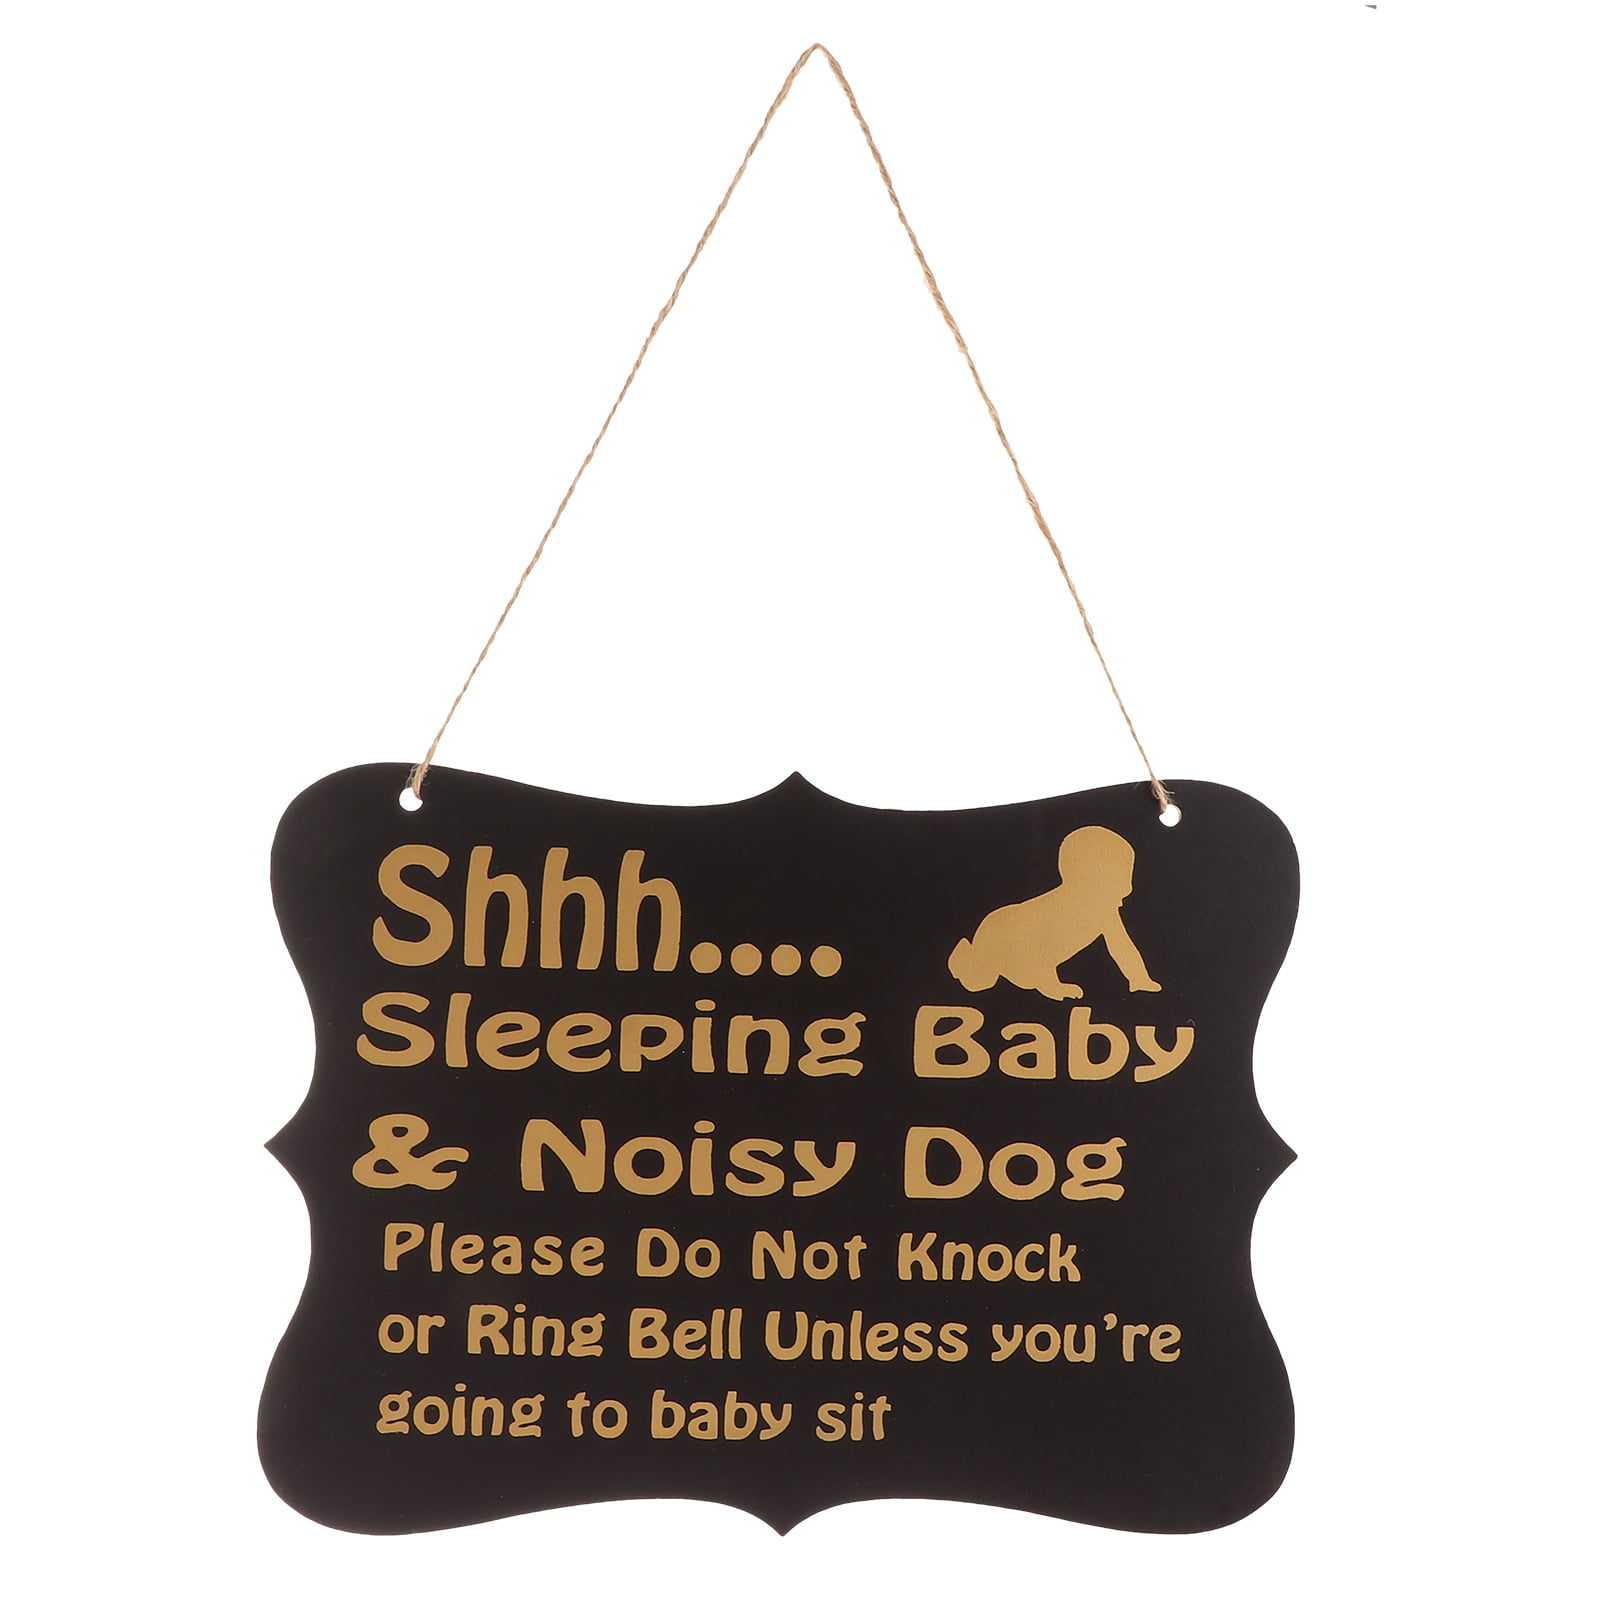 Black WINOMO Shhh Sleeping Baby Door Sign Do Not Disturb Sign Baby Room Hanging Wooden Decorative Sign Do Not Knock or Ring Baby Sleeping Hanger Sign 